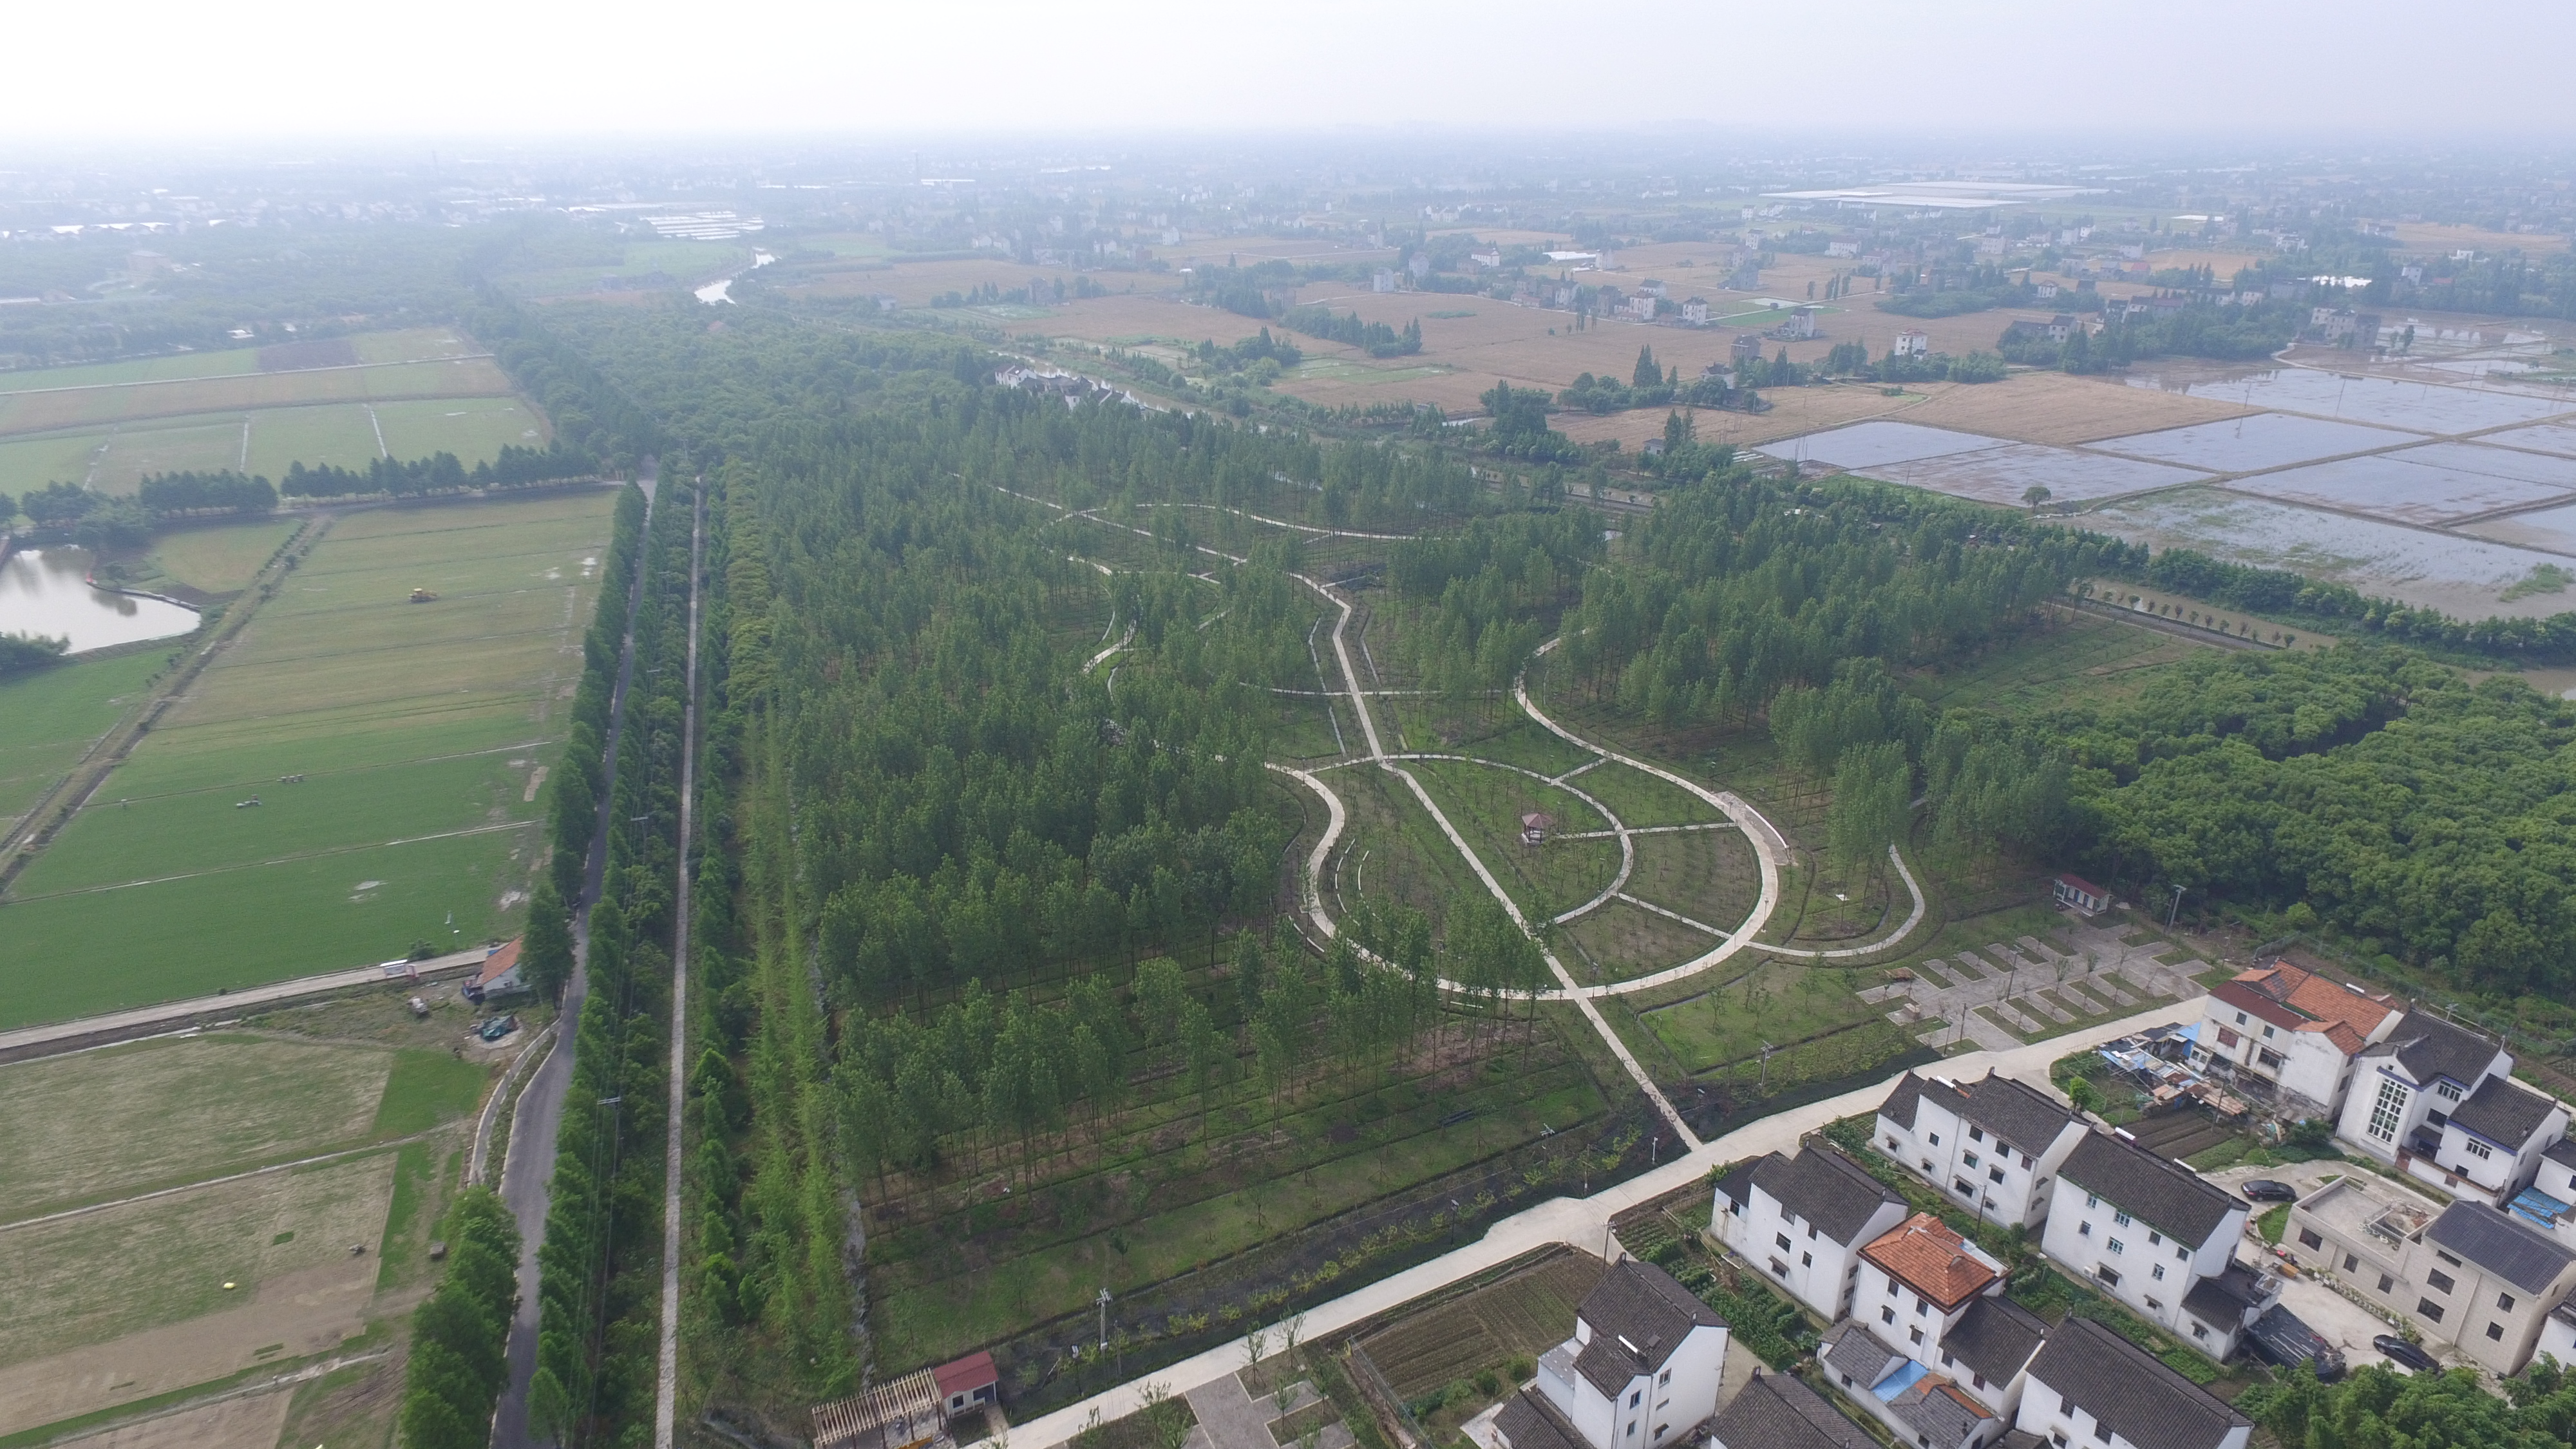 上海打造“可穿行的绿洲”，8个大型开放式休闲林地年底建成